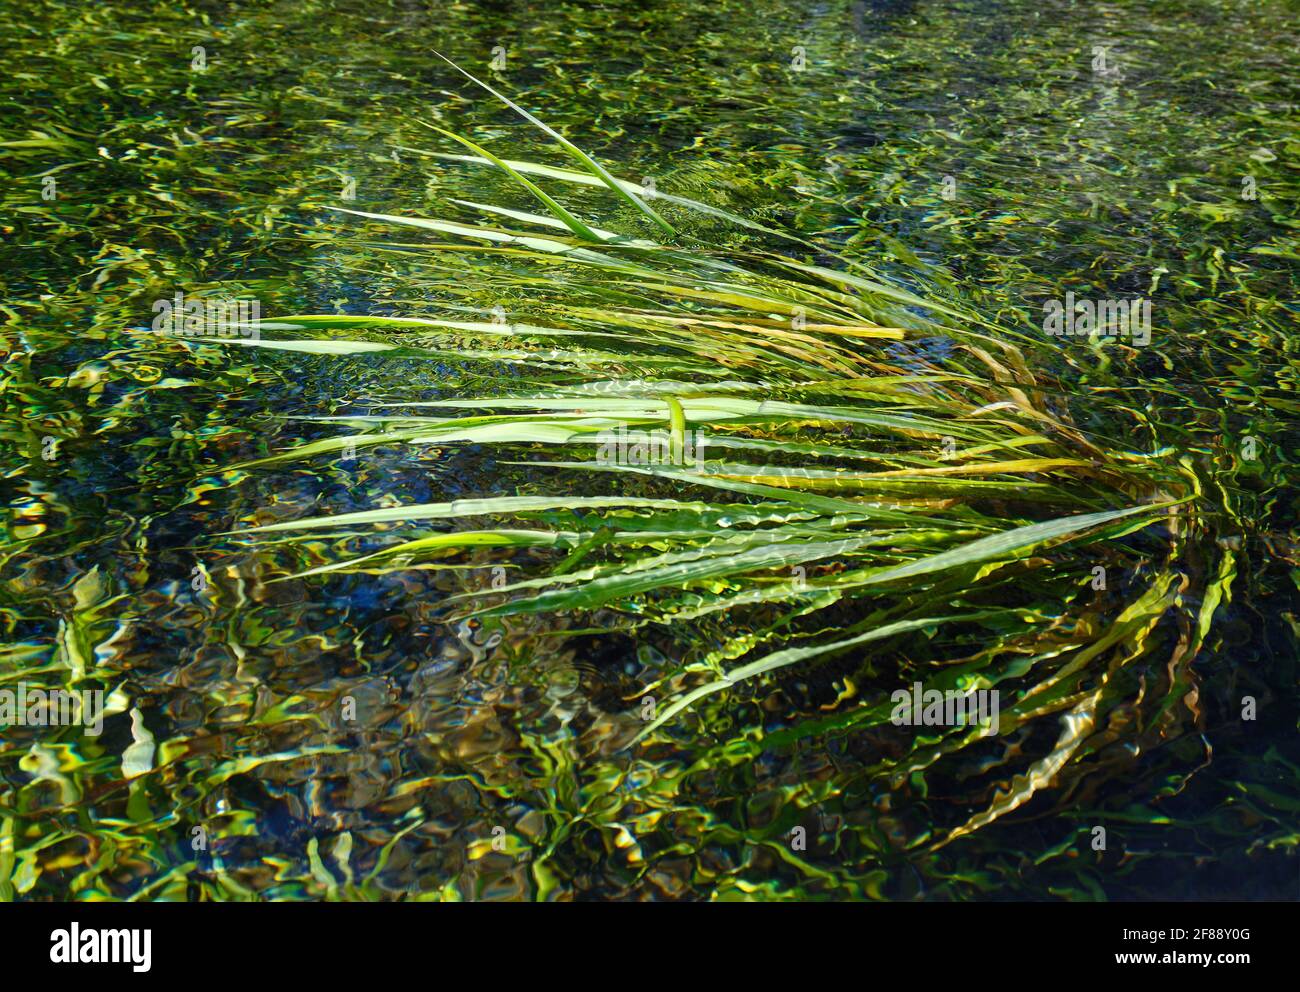 Vegetazione subacquea, ondeggiare, movimento, tirato su un lato, acqua limpida, natura, verde, Ichetucknee Springs state Park, Florida, Fort White, FL, sprin Foto Stock